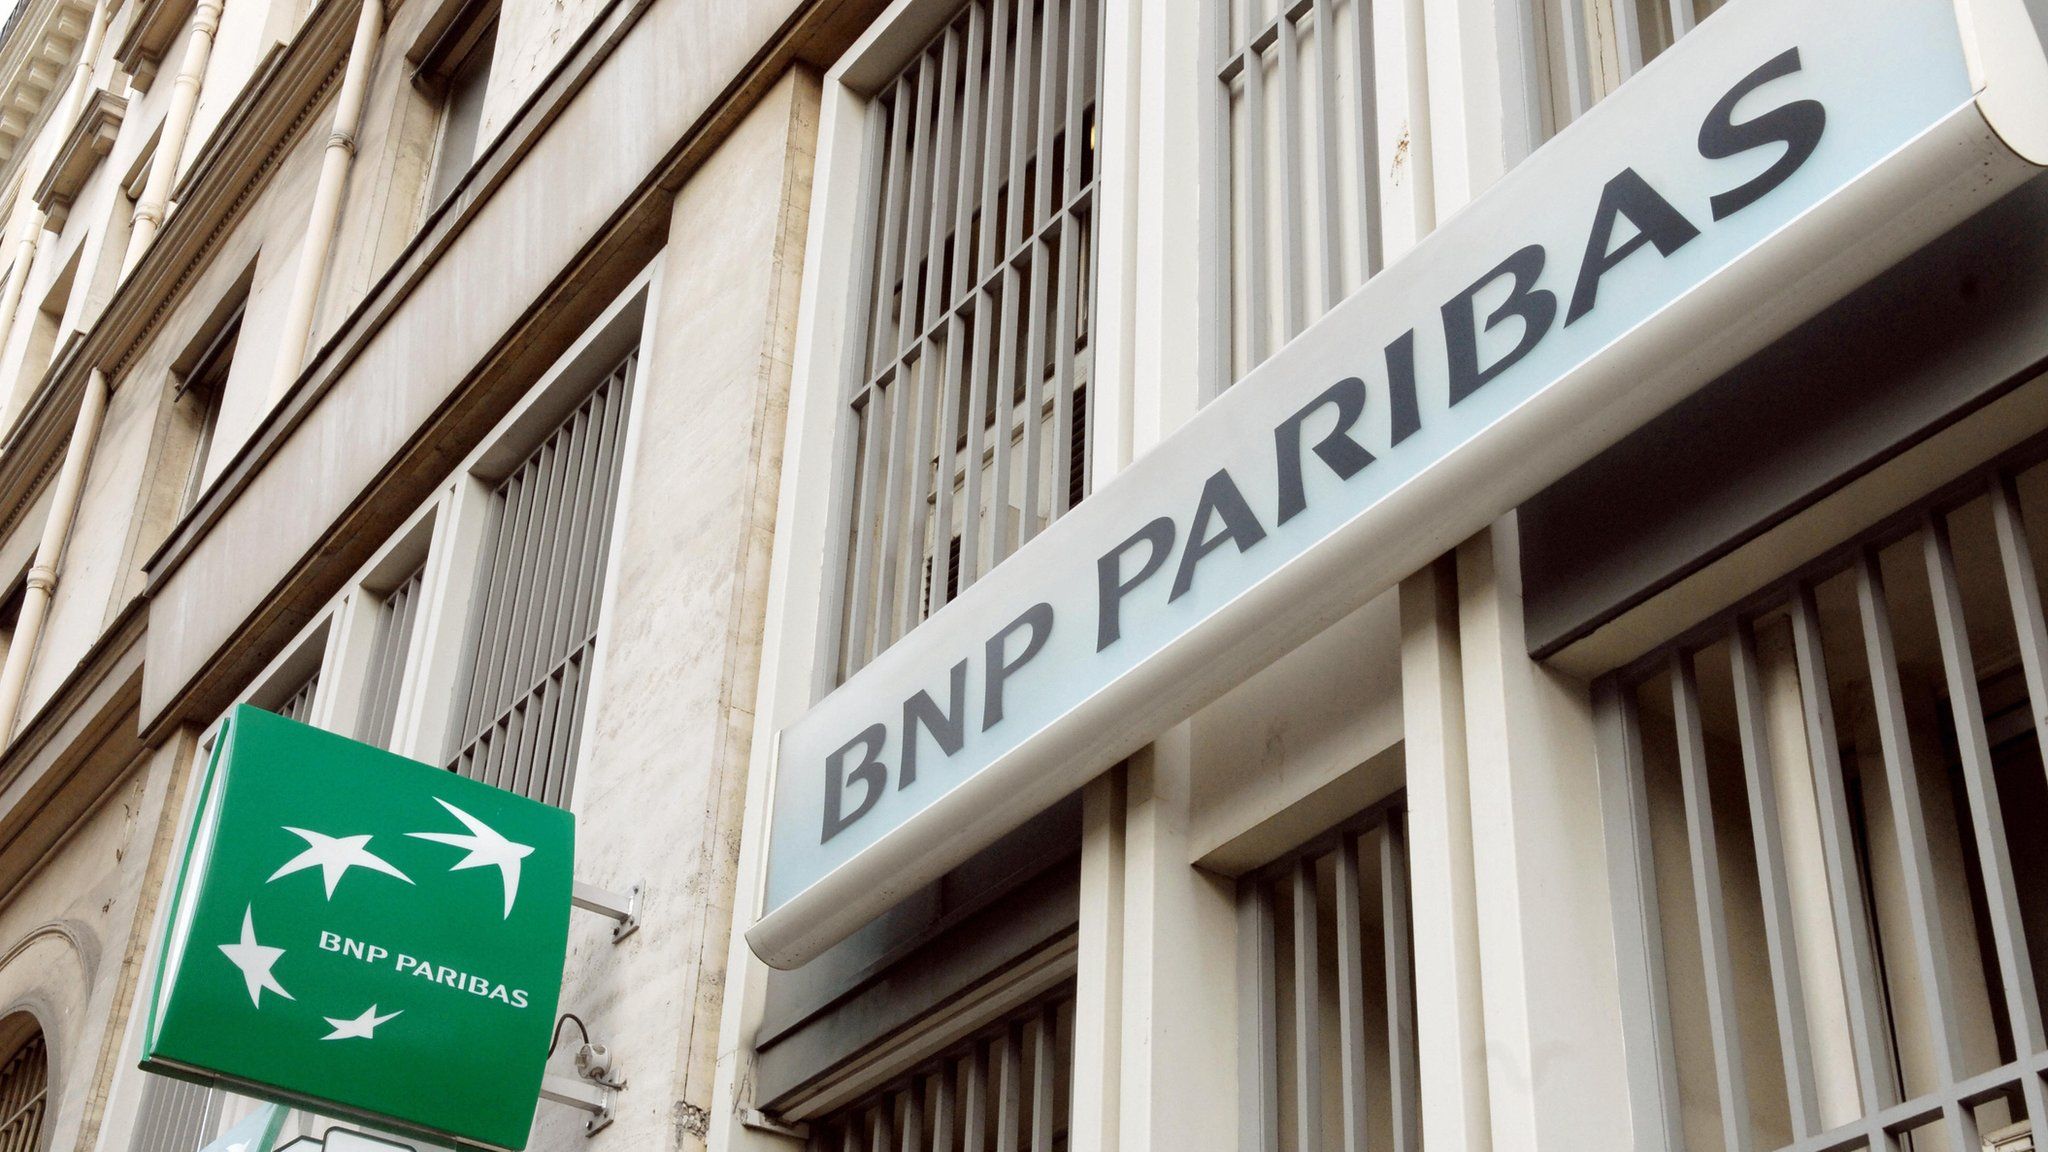 BNP Paribas bank picture